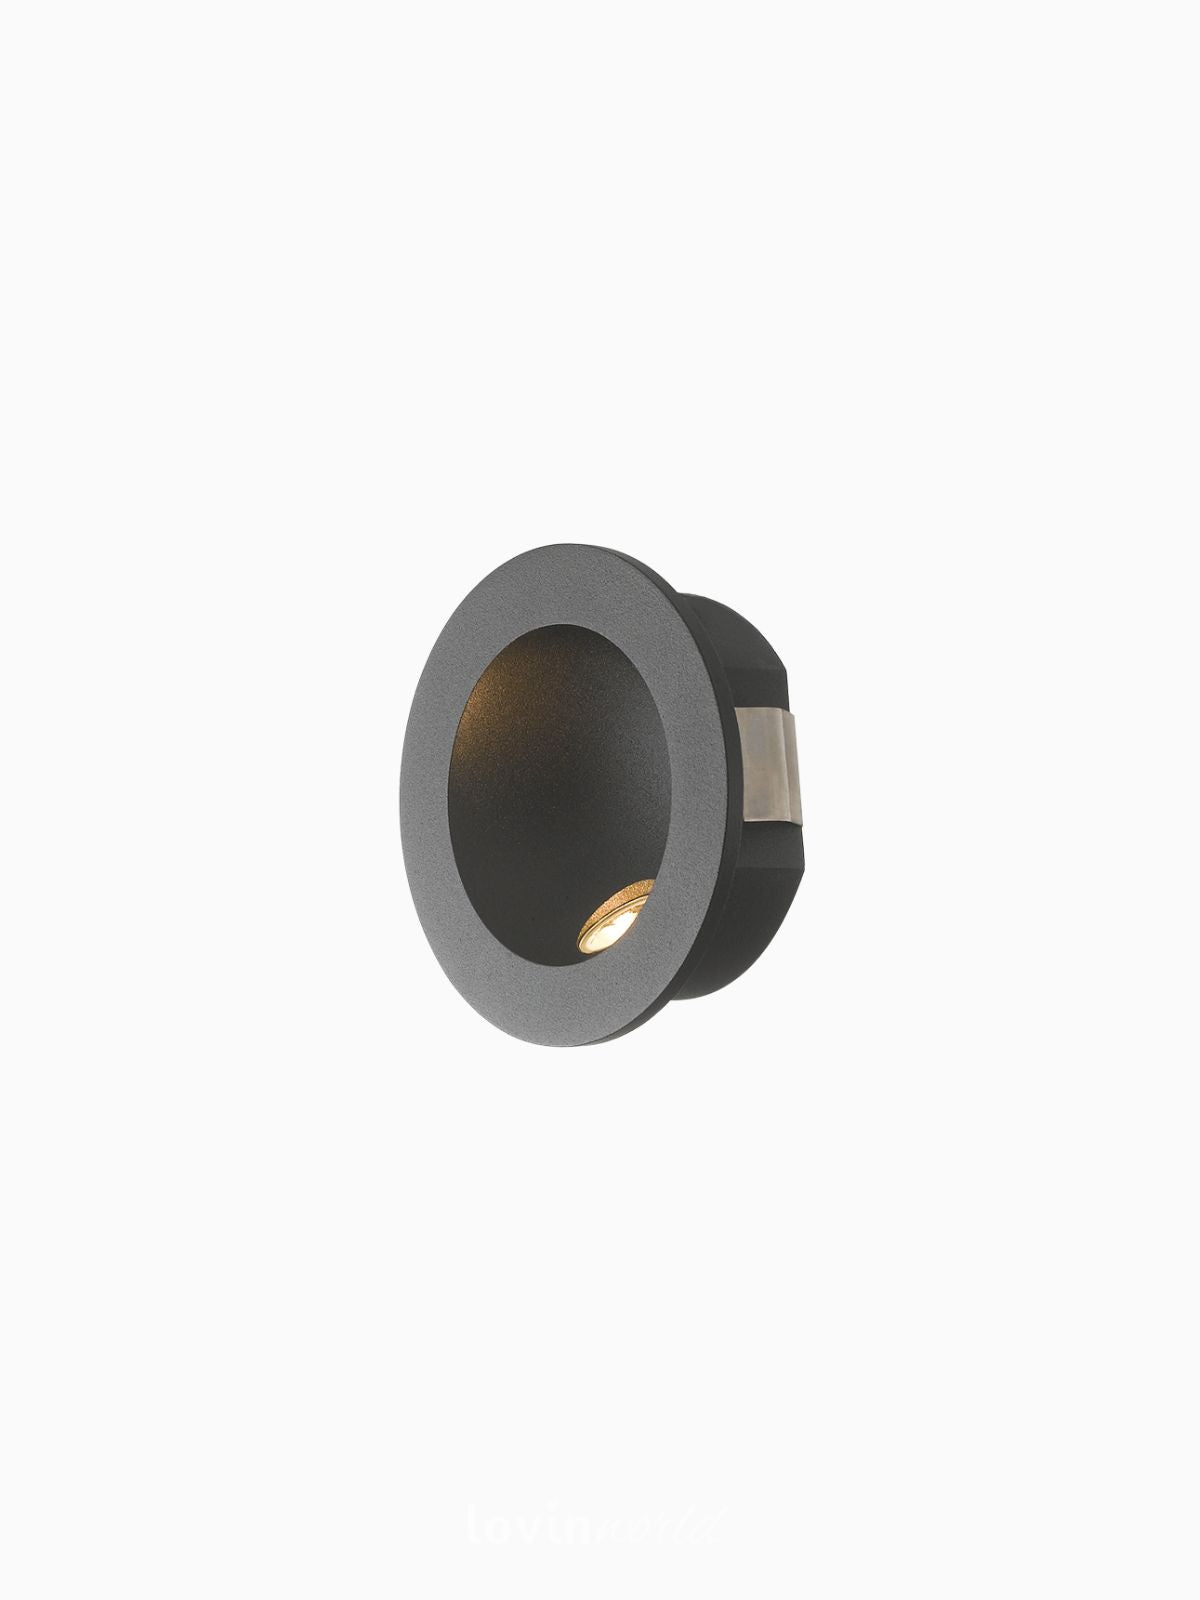 Segnapassi da esterno LED Onyx rotondo in alluminio, colore nero-1